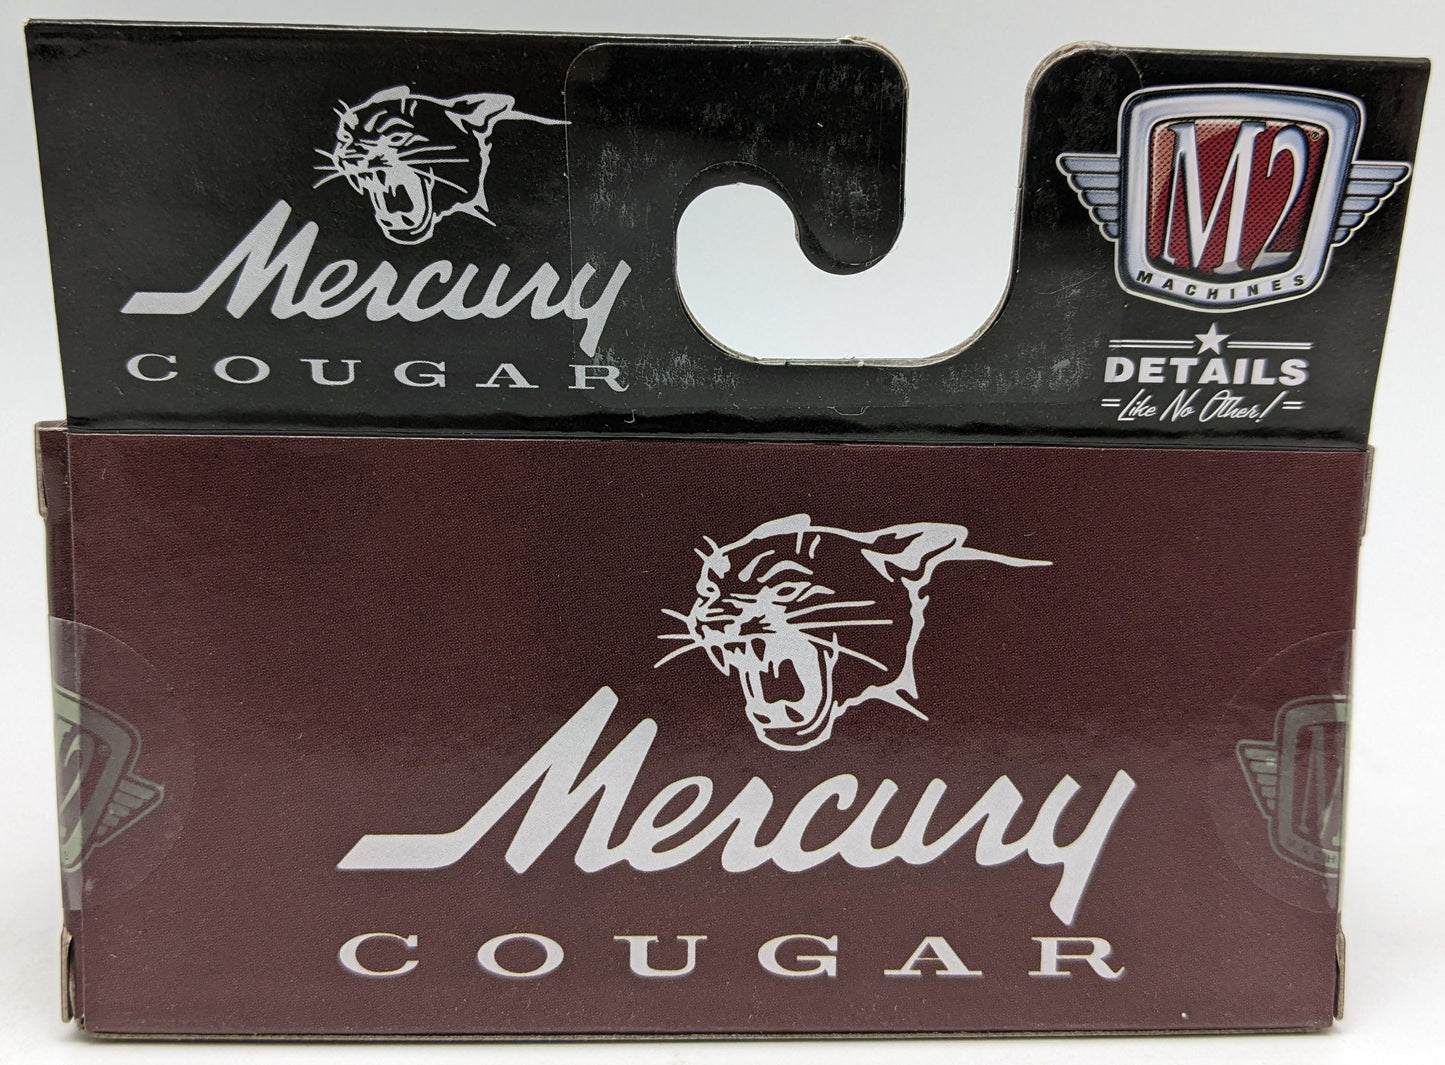 M2 1968 Mercury Cougar 390